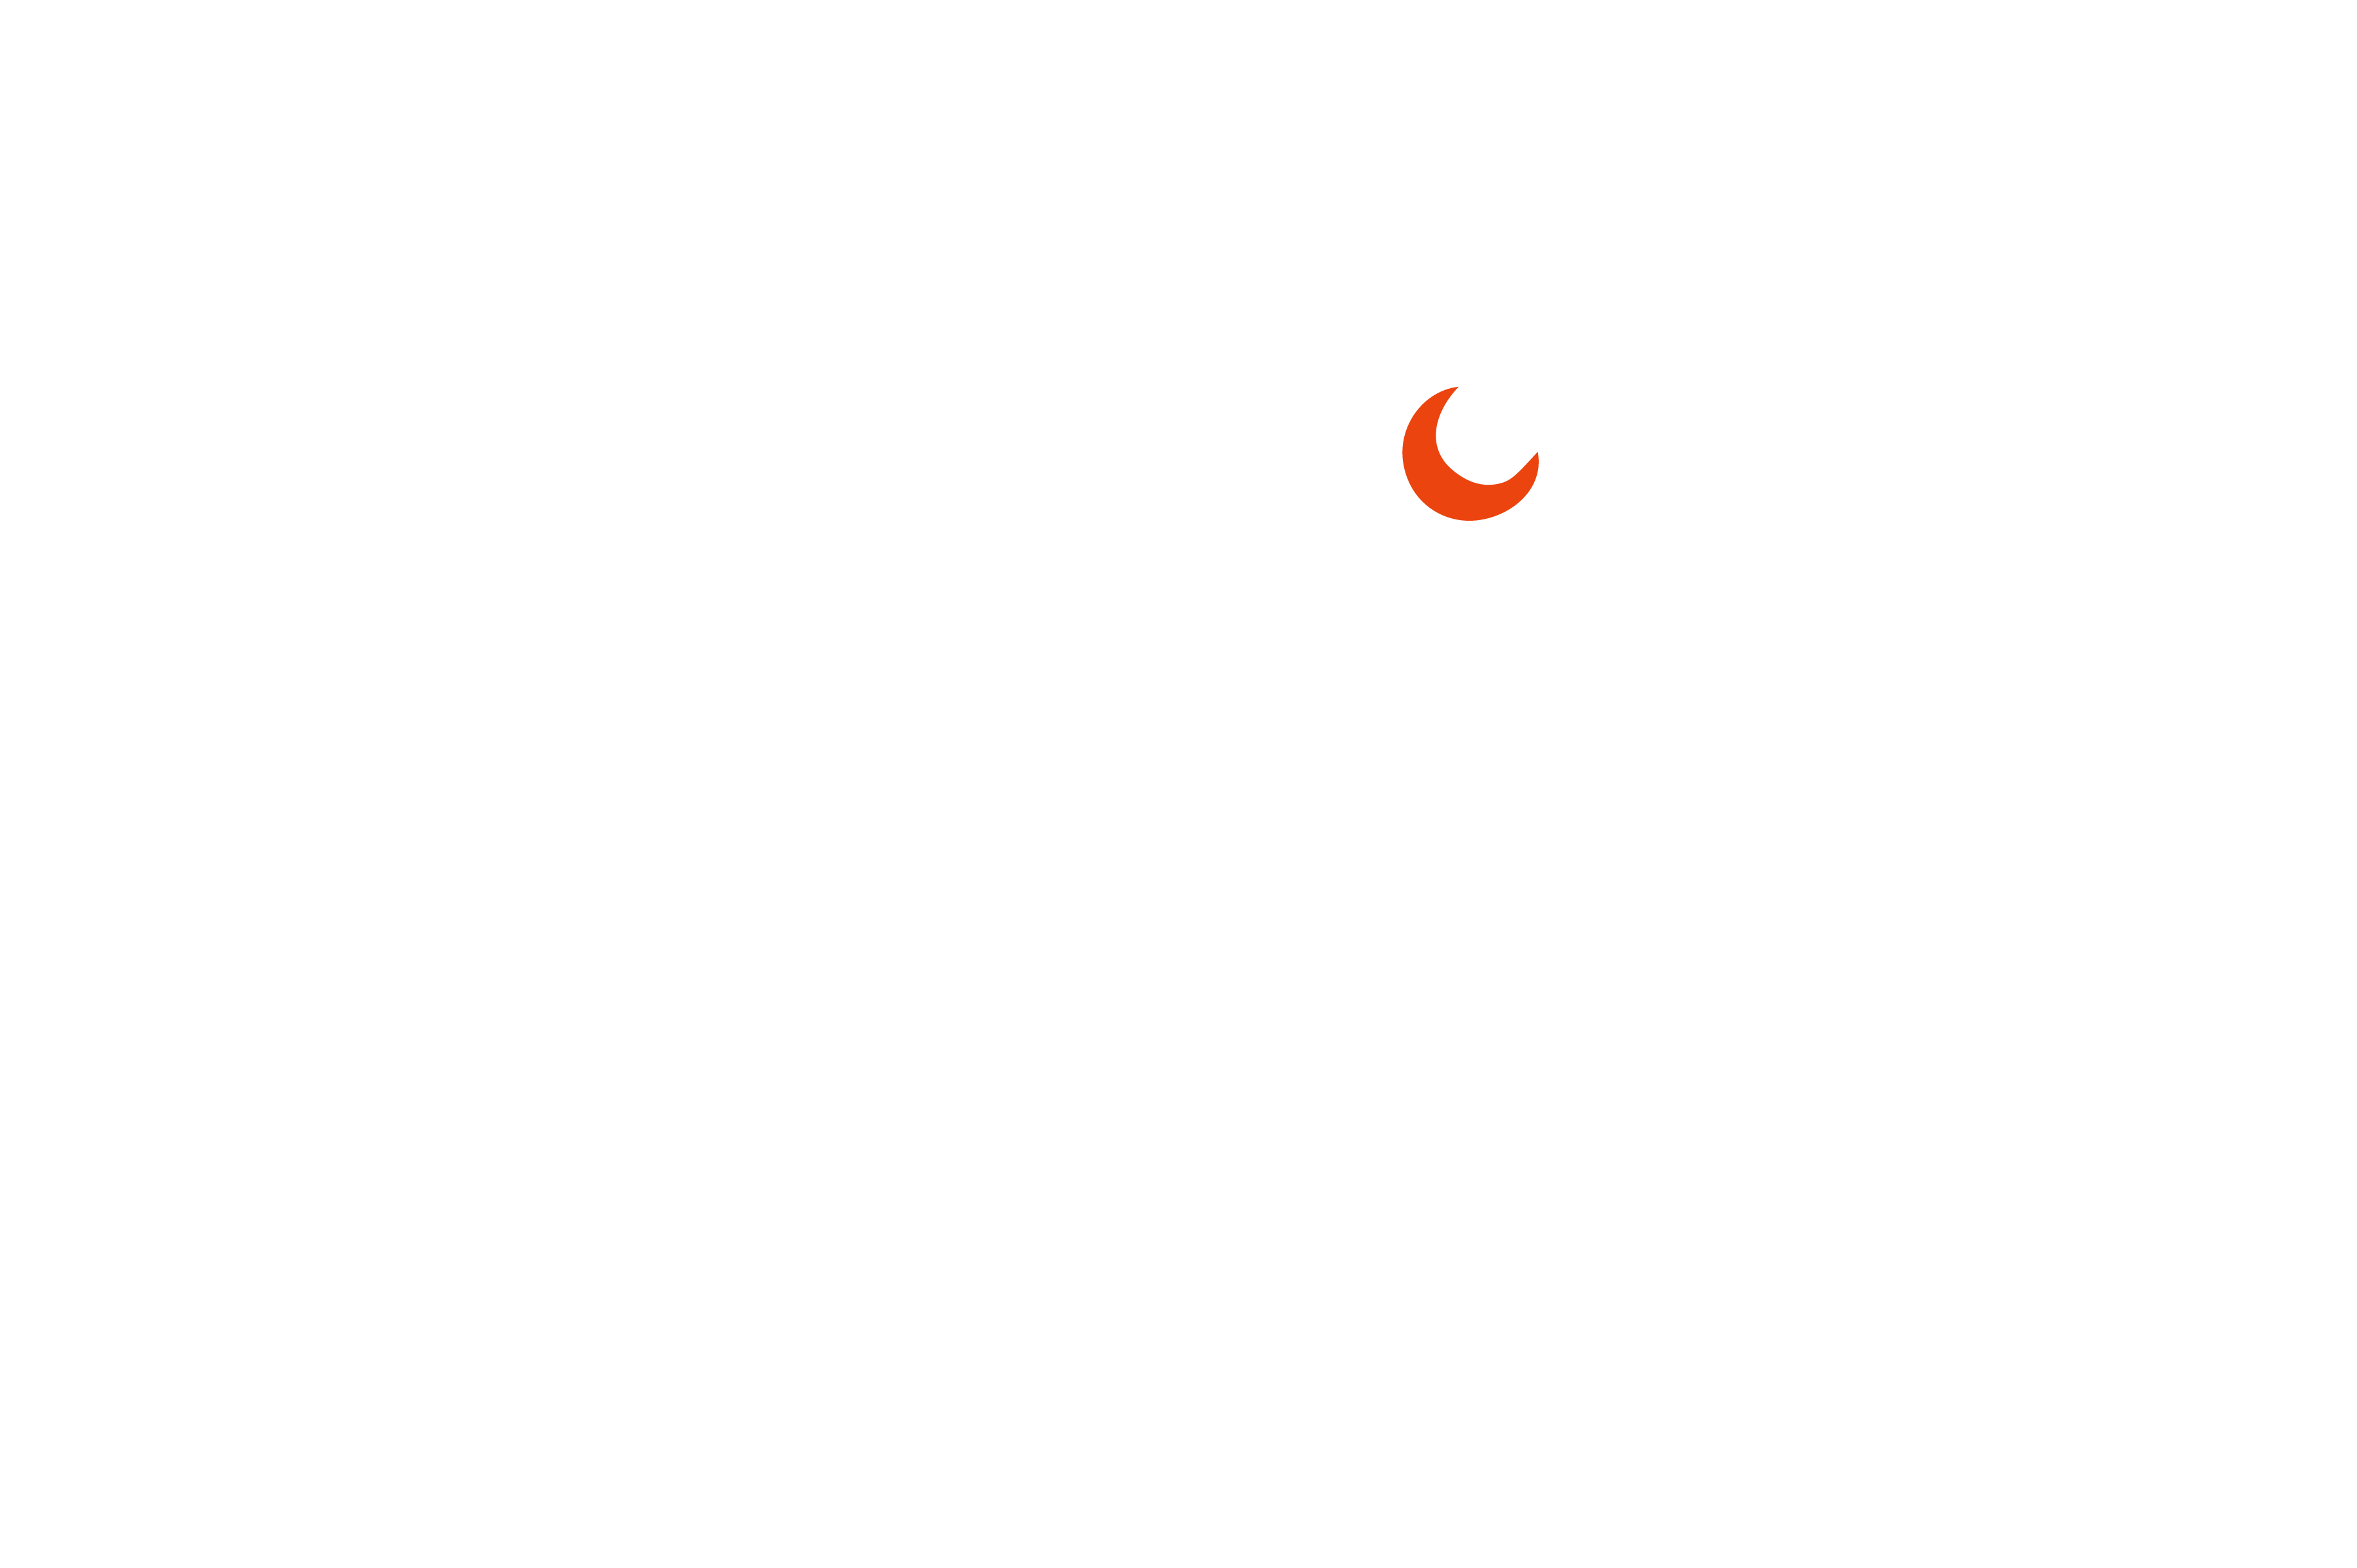 NightFox Marketing